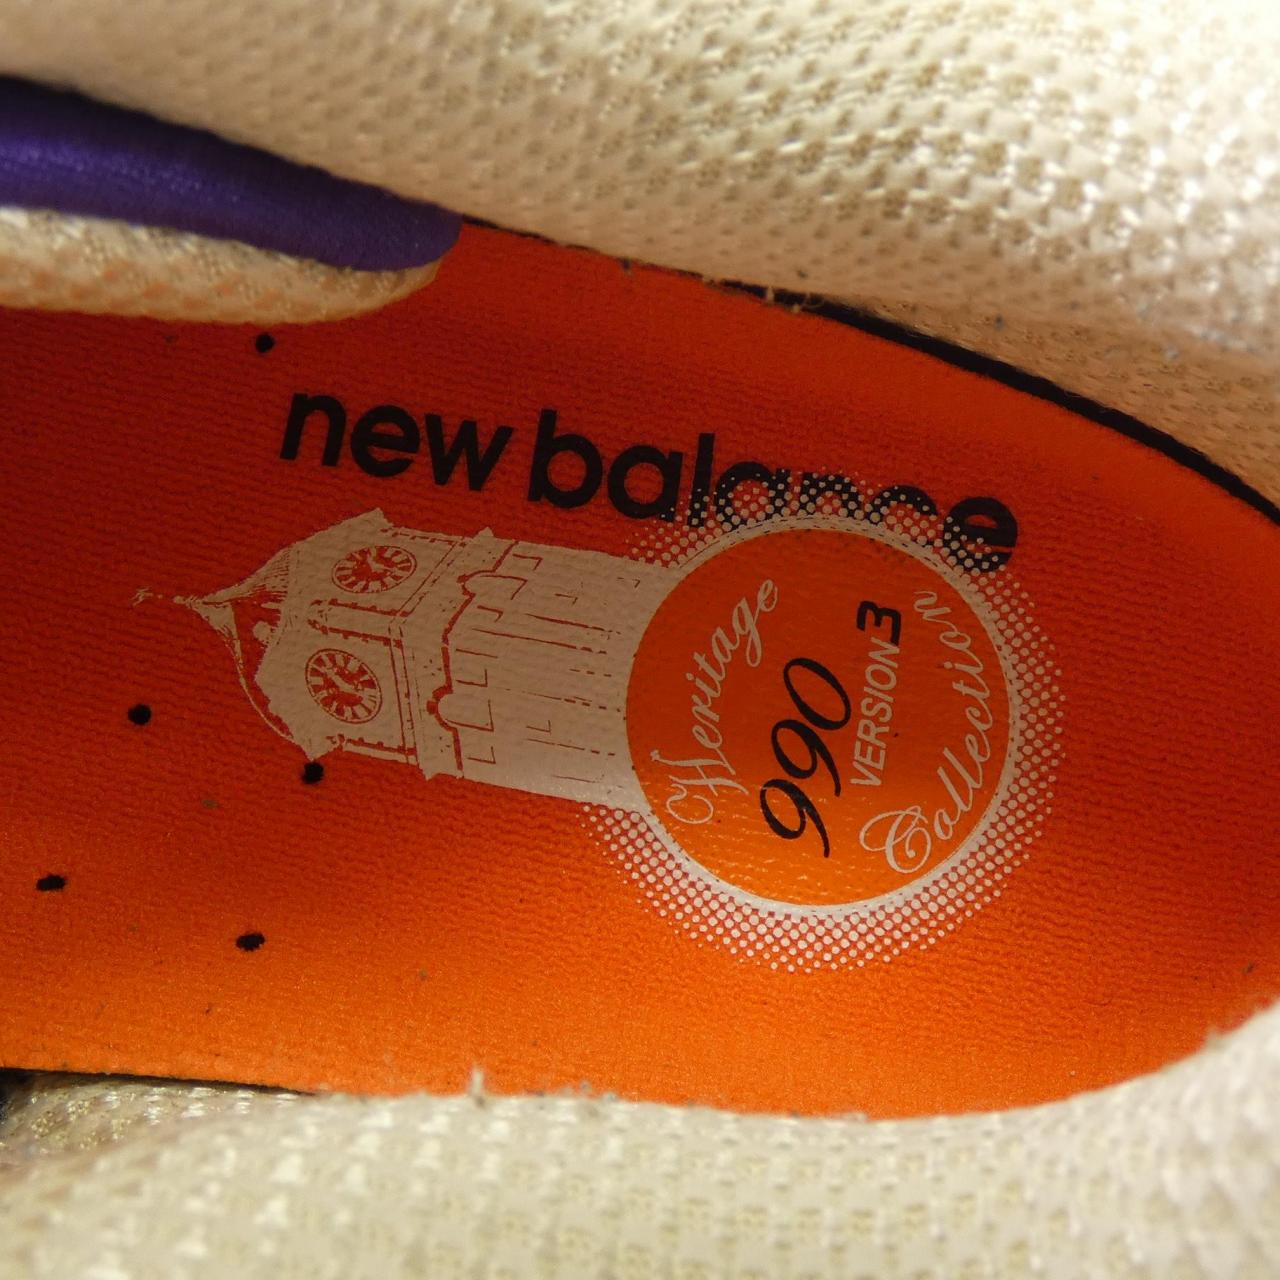 新百倫NEW BALANCE運動鞋